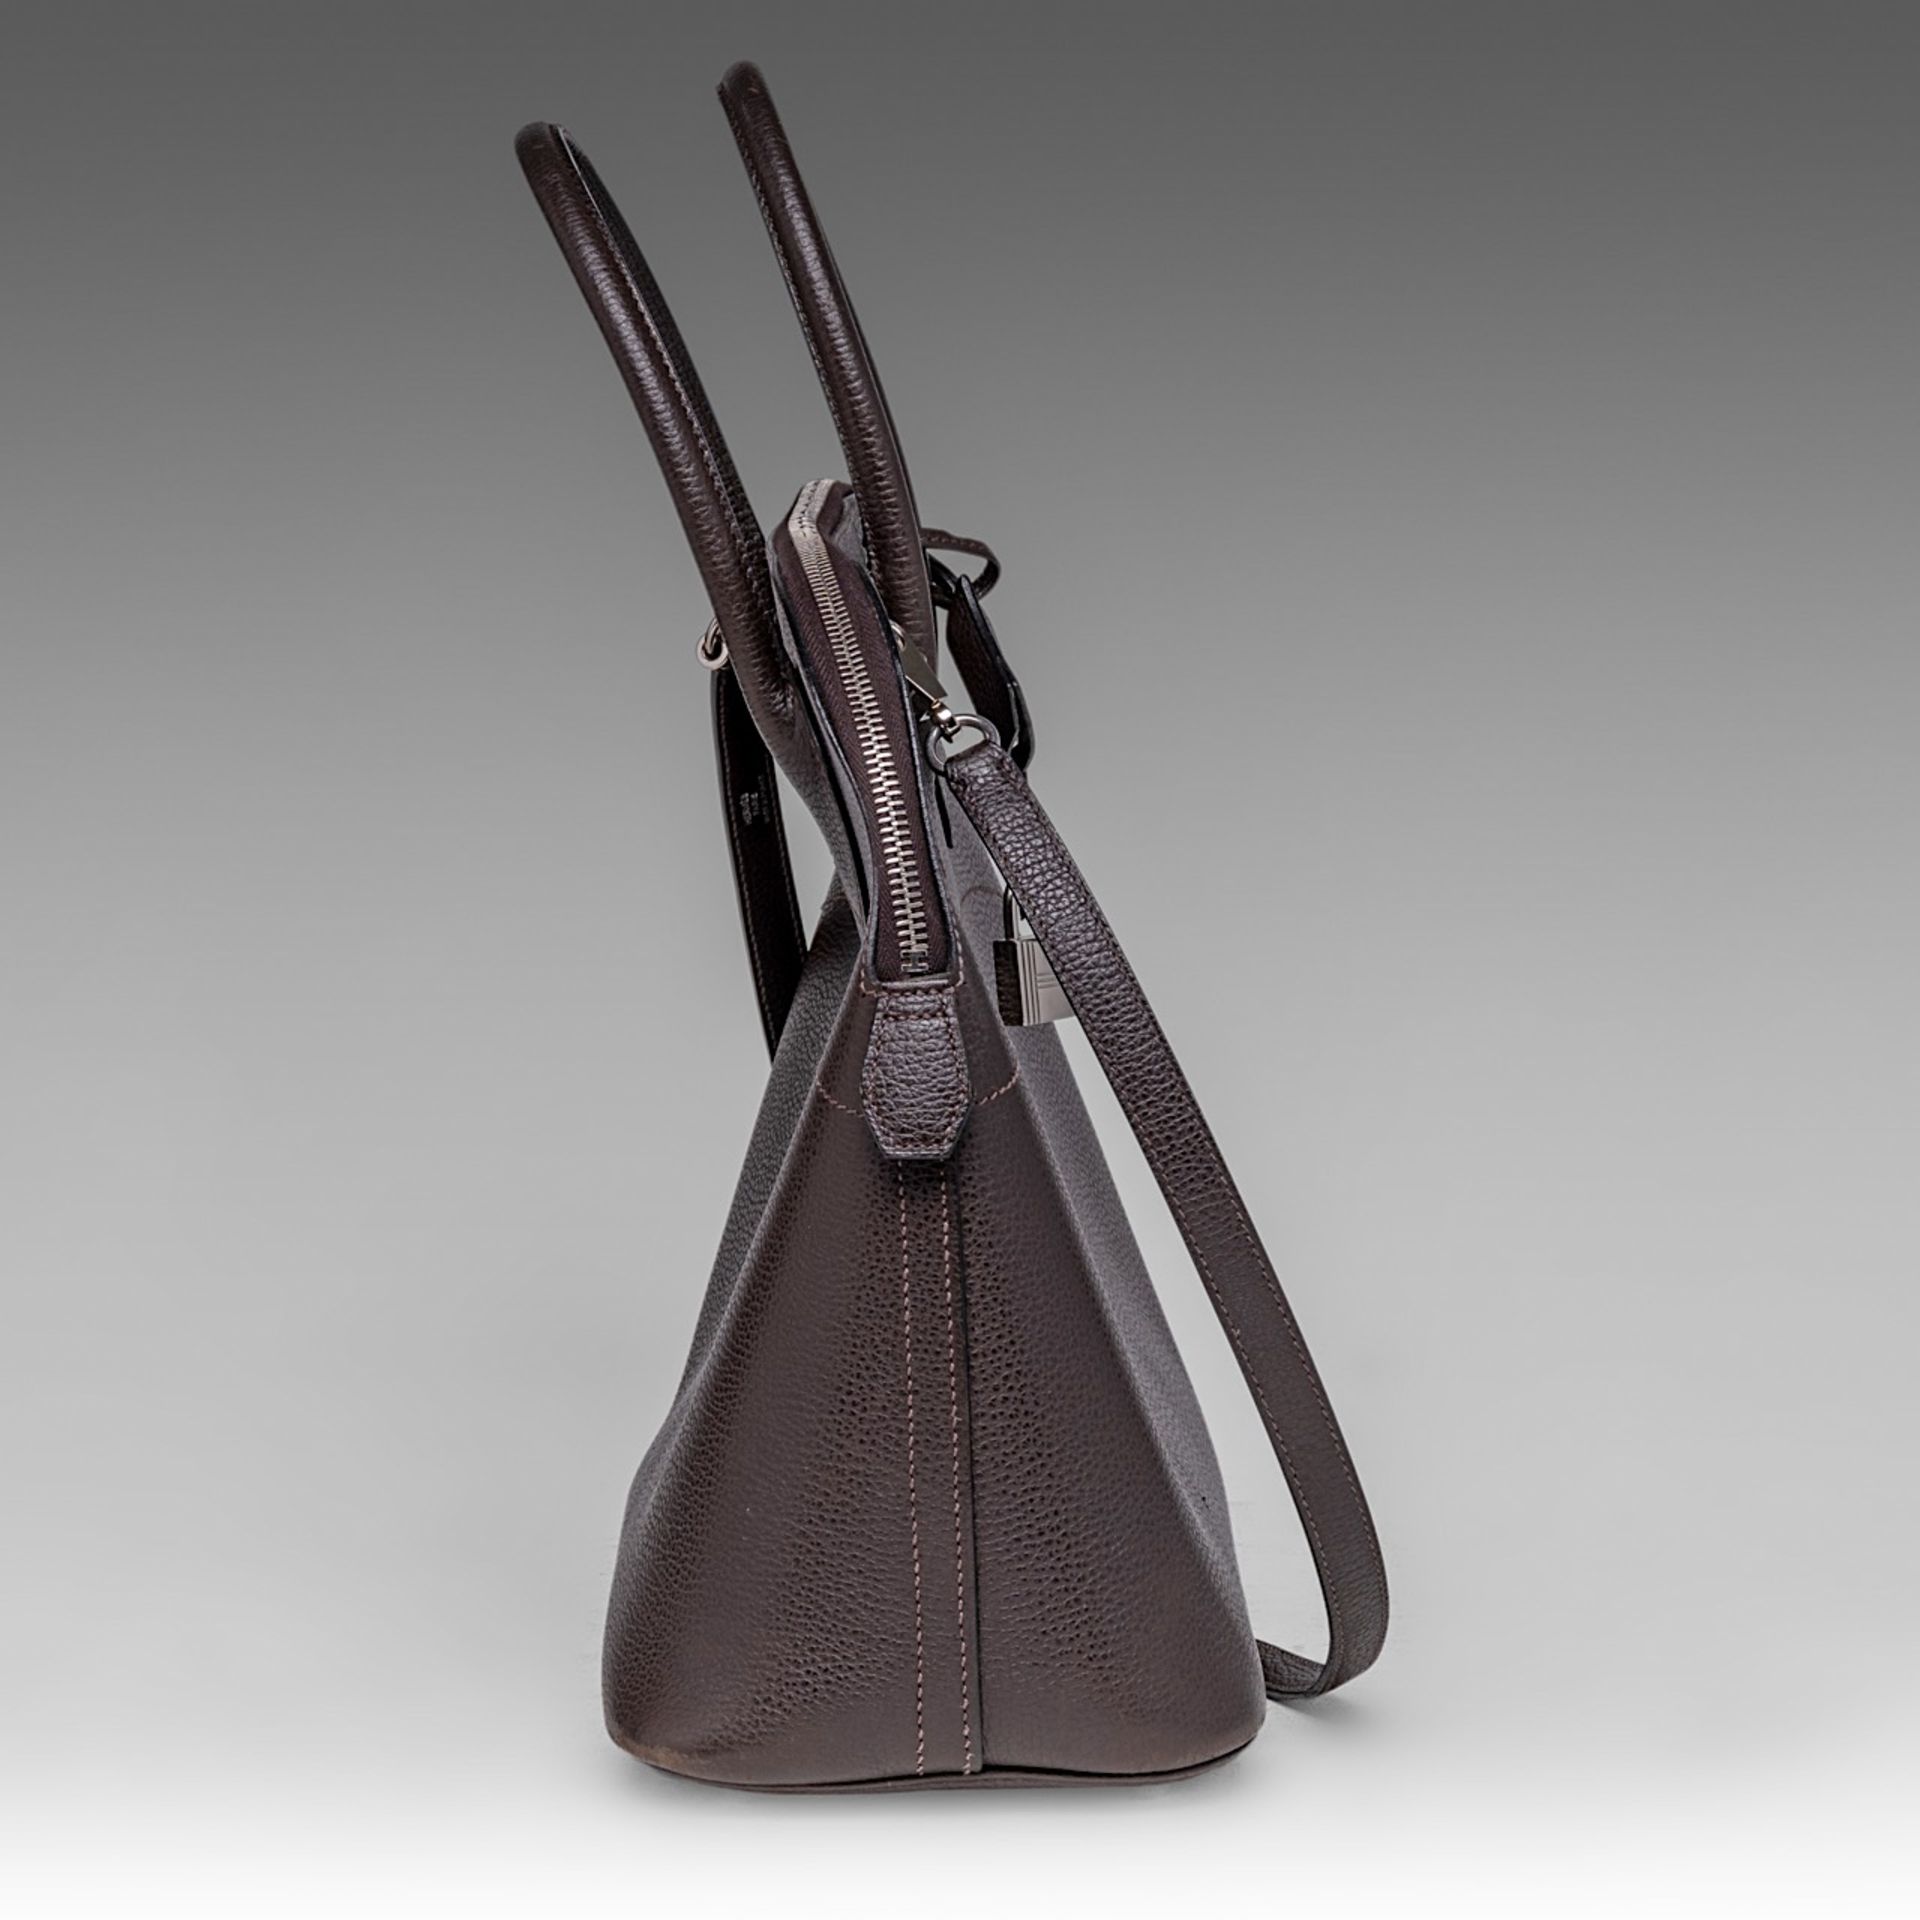 A Hermes bolide 34 CK brown veau epsom handbag, H 28 - W 37 - D 14 cm - Image 6 of 15